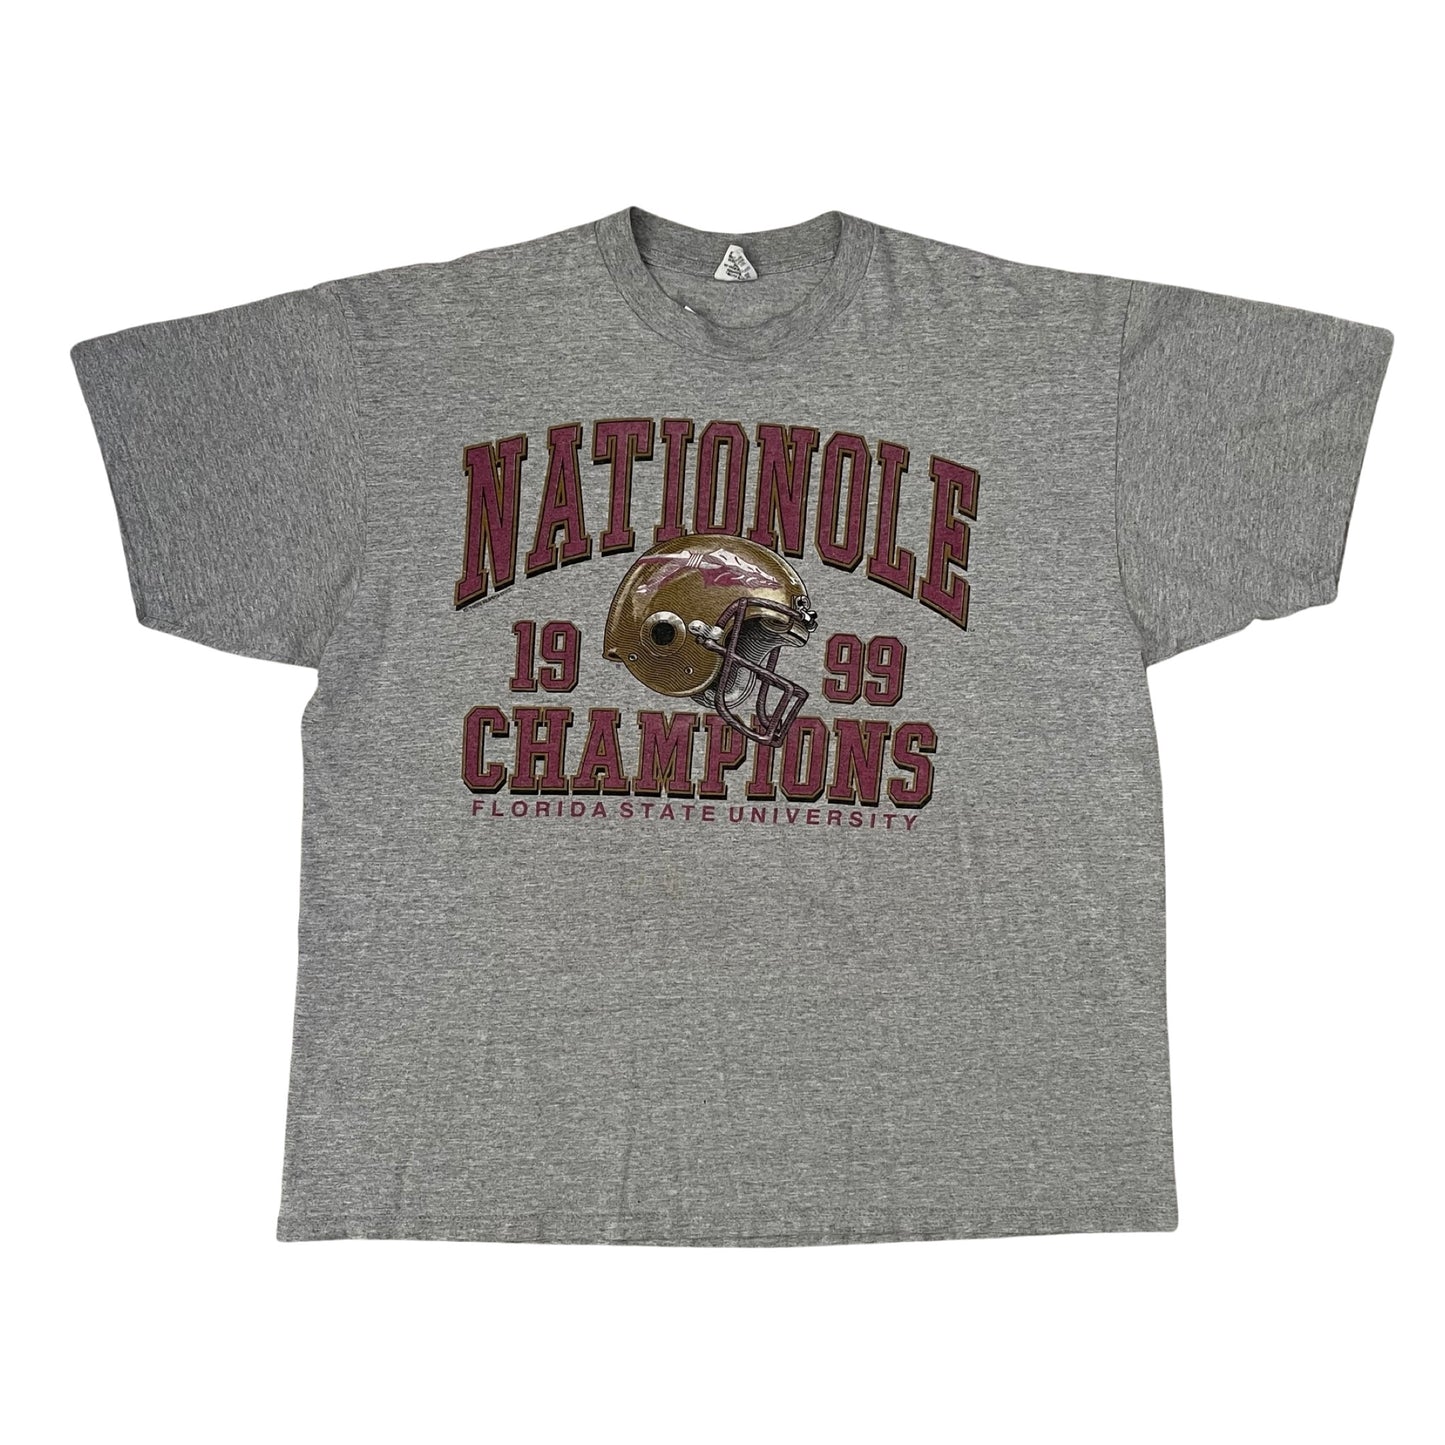 Florida State Seminoles FSU 1999 "NATIONOLE" Champions shirt size XL